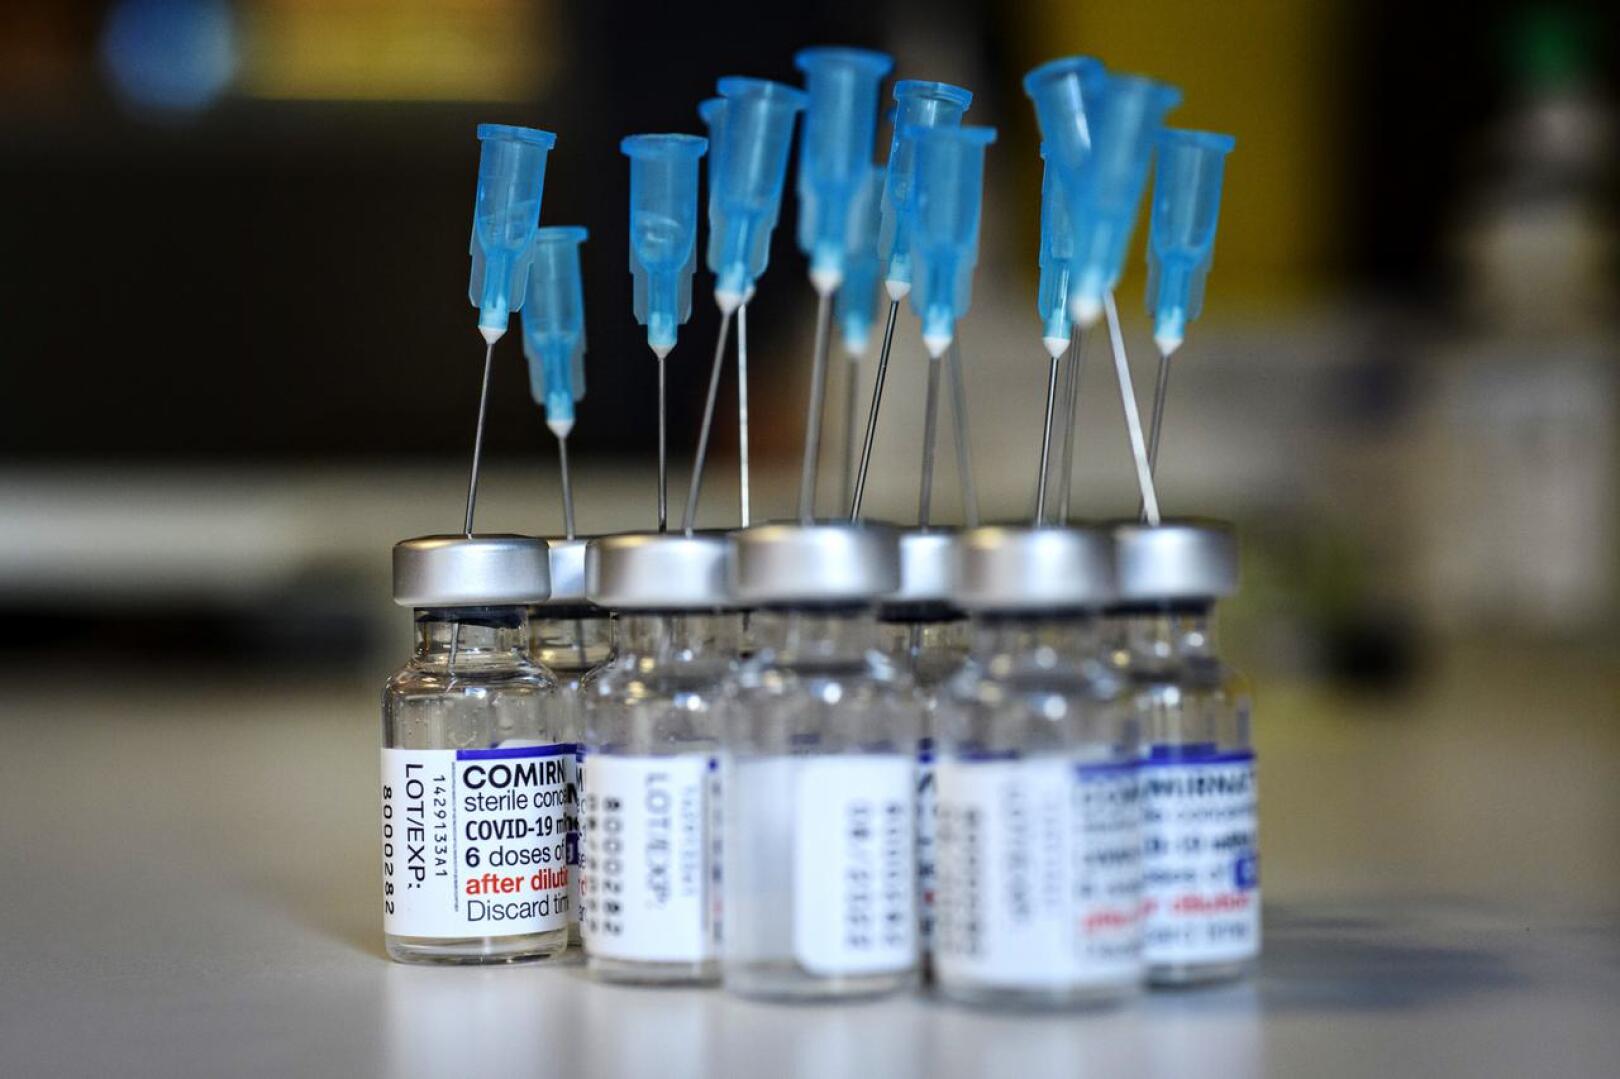 Neljäs rokote annetaan tällä hetkellä yli 65-vuotiaille ja riskiryhmille. Syksyksi odotetaan uusia varianttirokotteita. joiden käytöstä ei ole vielä suosituksia.